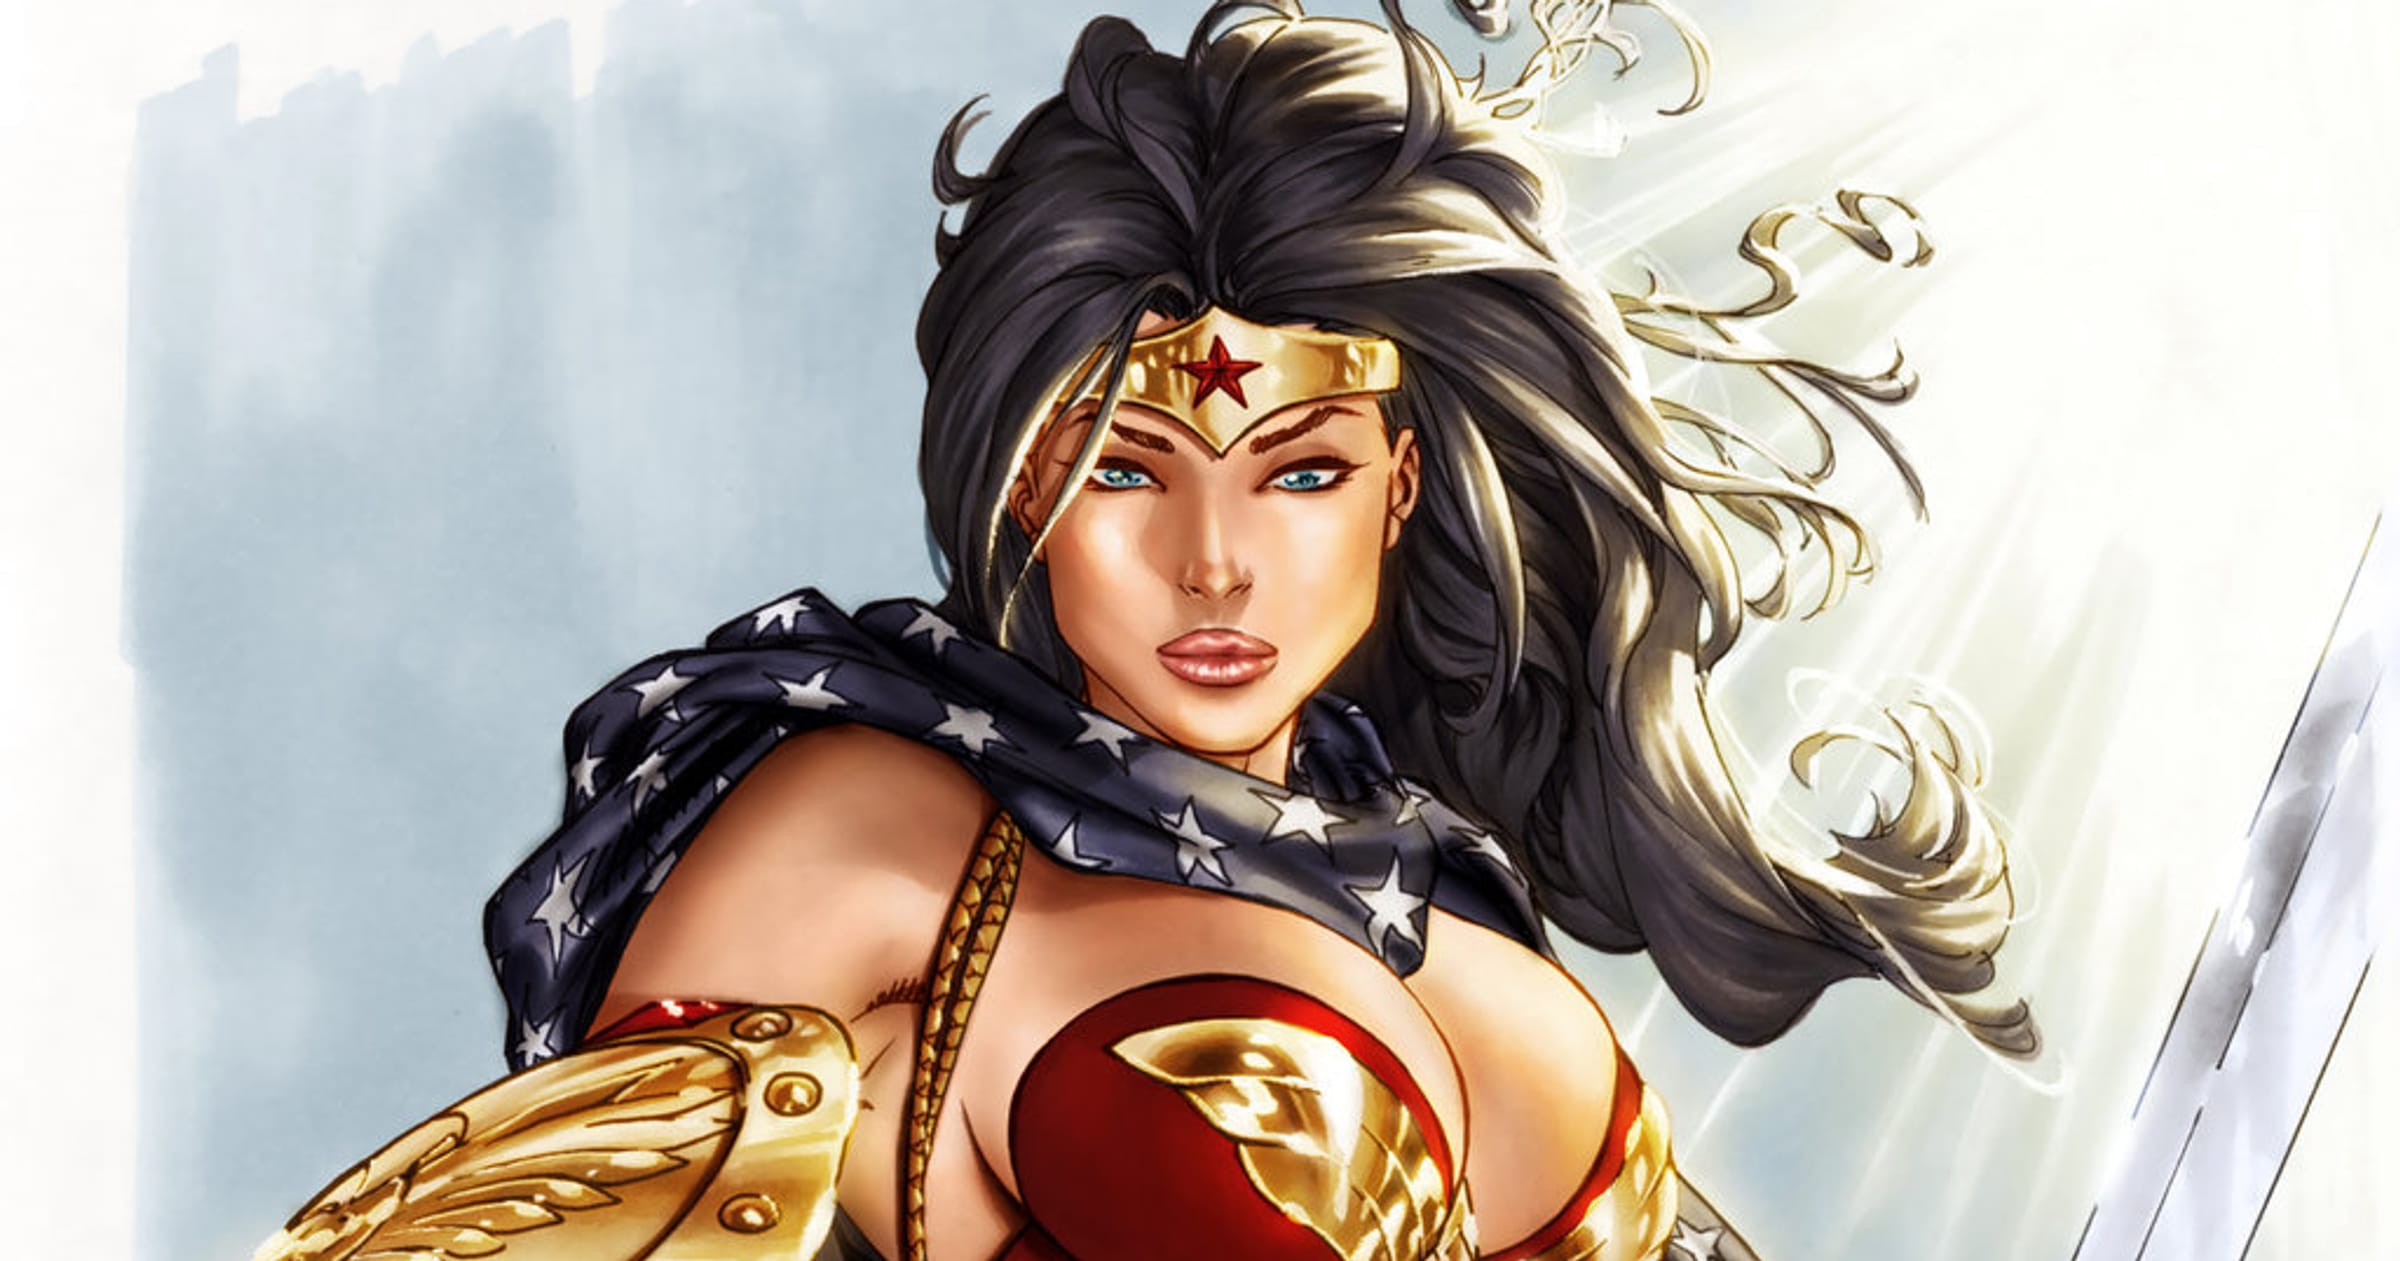 Wonder Woman Inspired Super Hero Stars Men's Briefs with Gold Waist